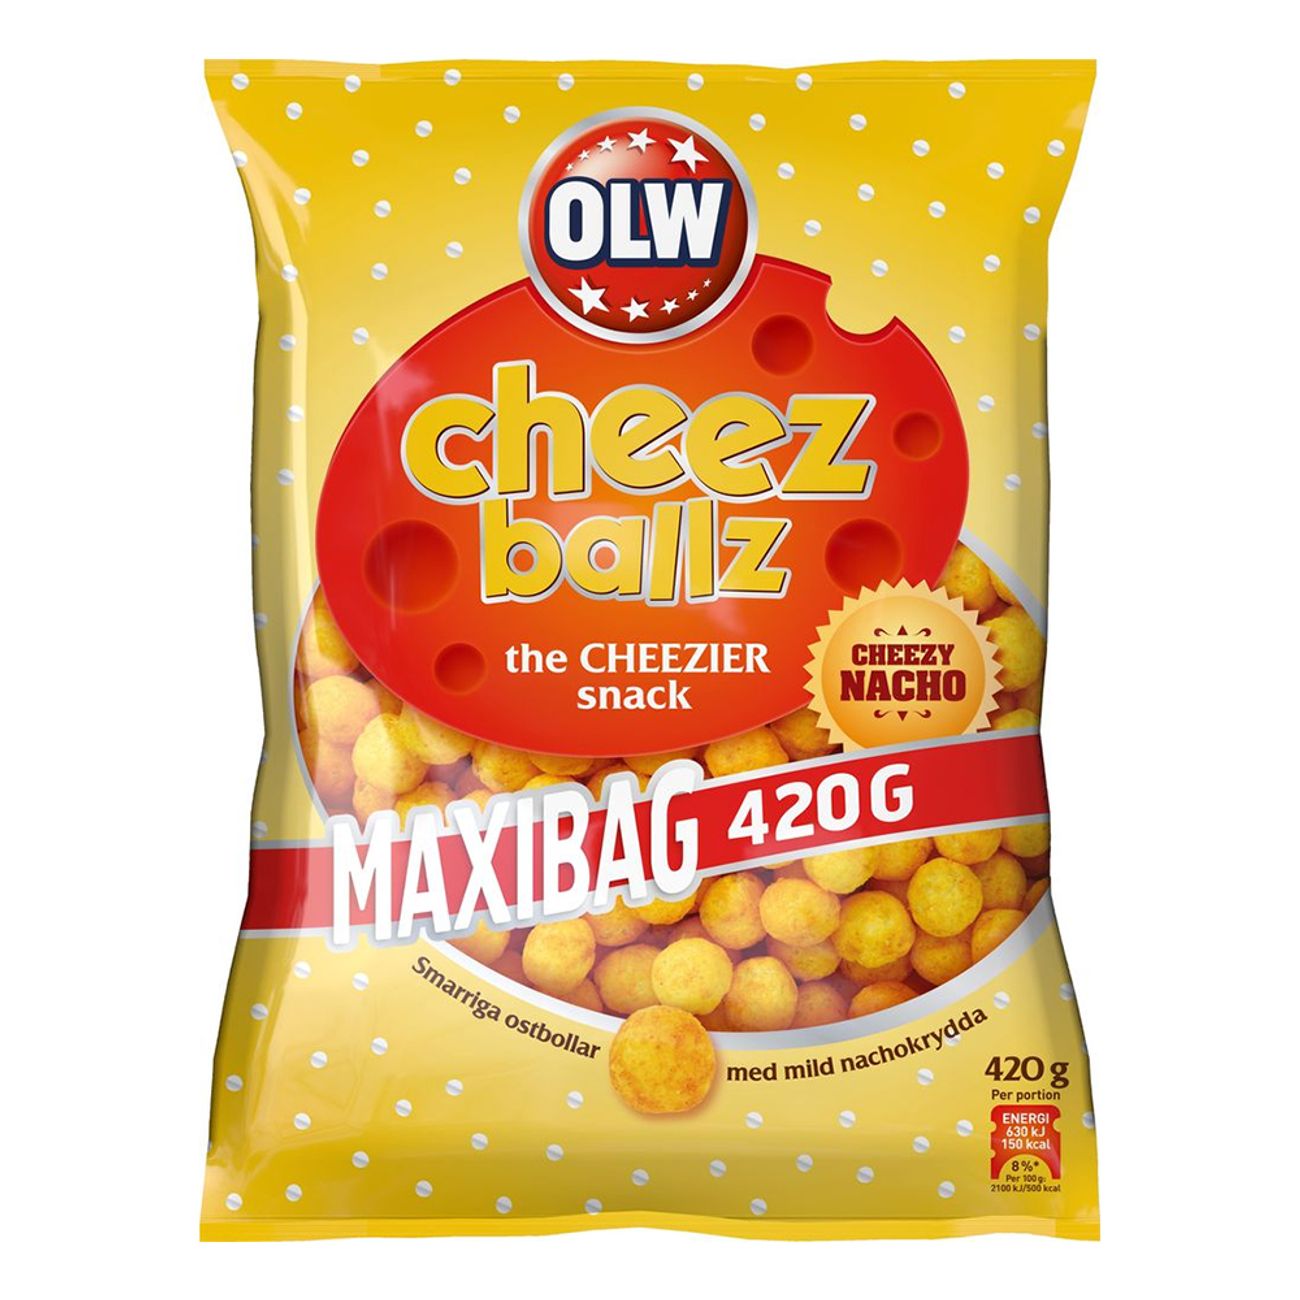 olw-maxibag-cheez-balls-73855-1